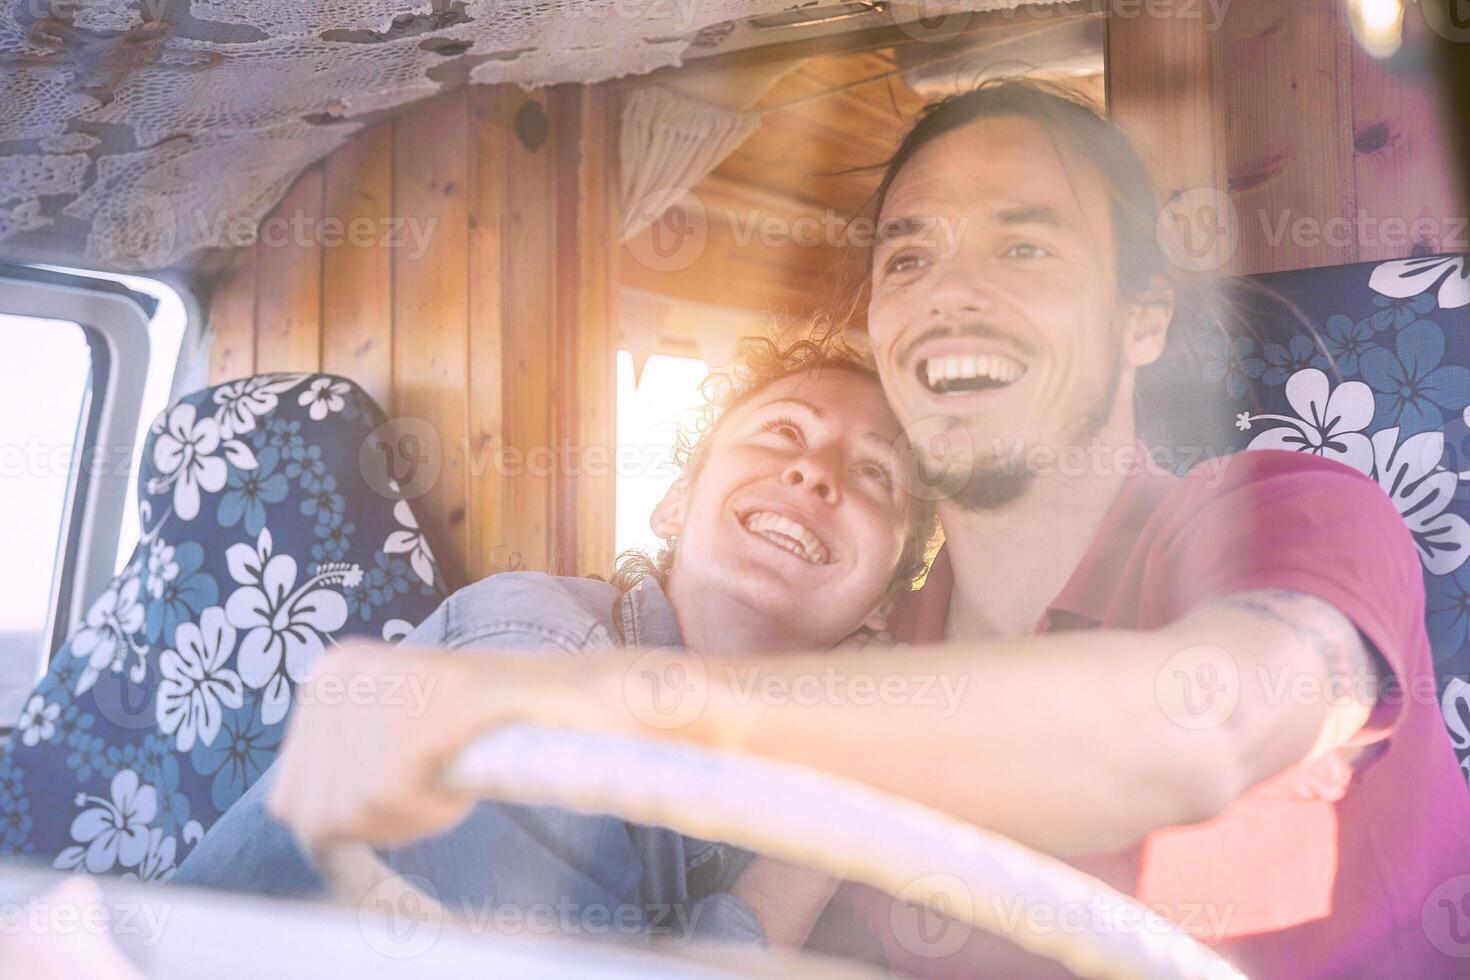 Lycklig leende par inuti en årgång minibuss - resa människor upphetsad körning för en väg resa med en skåpbil husbil - semester, kärlek, relation livsstil begrepp foto